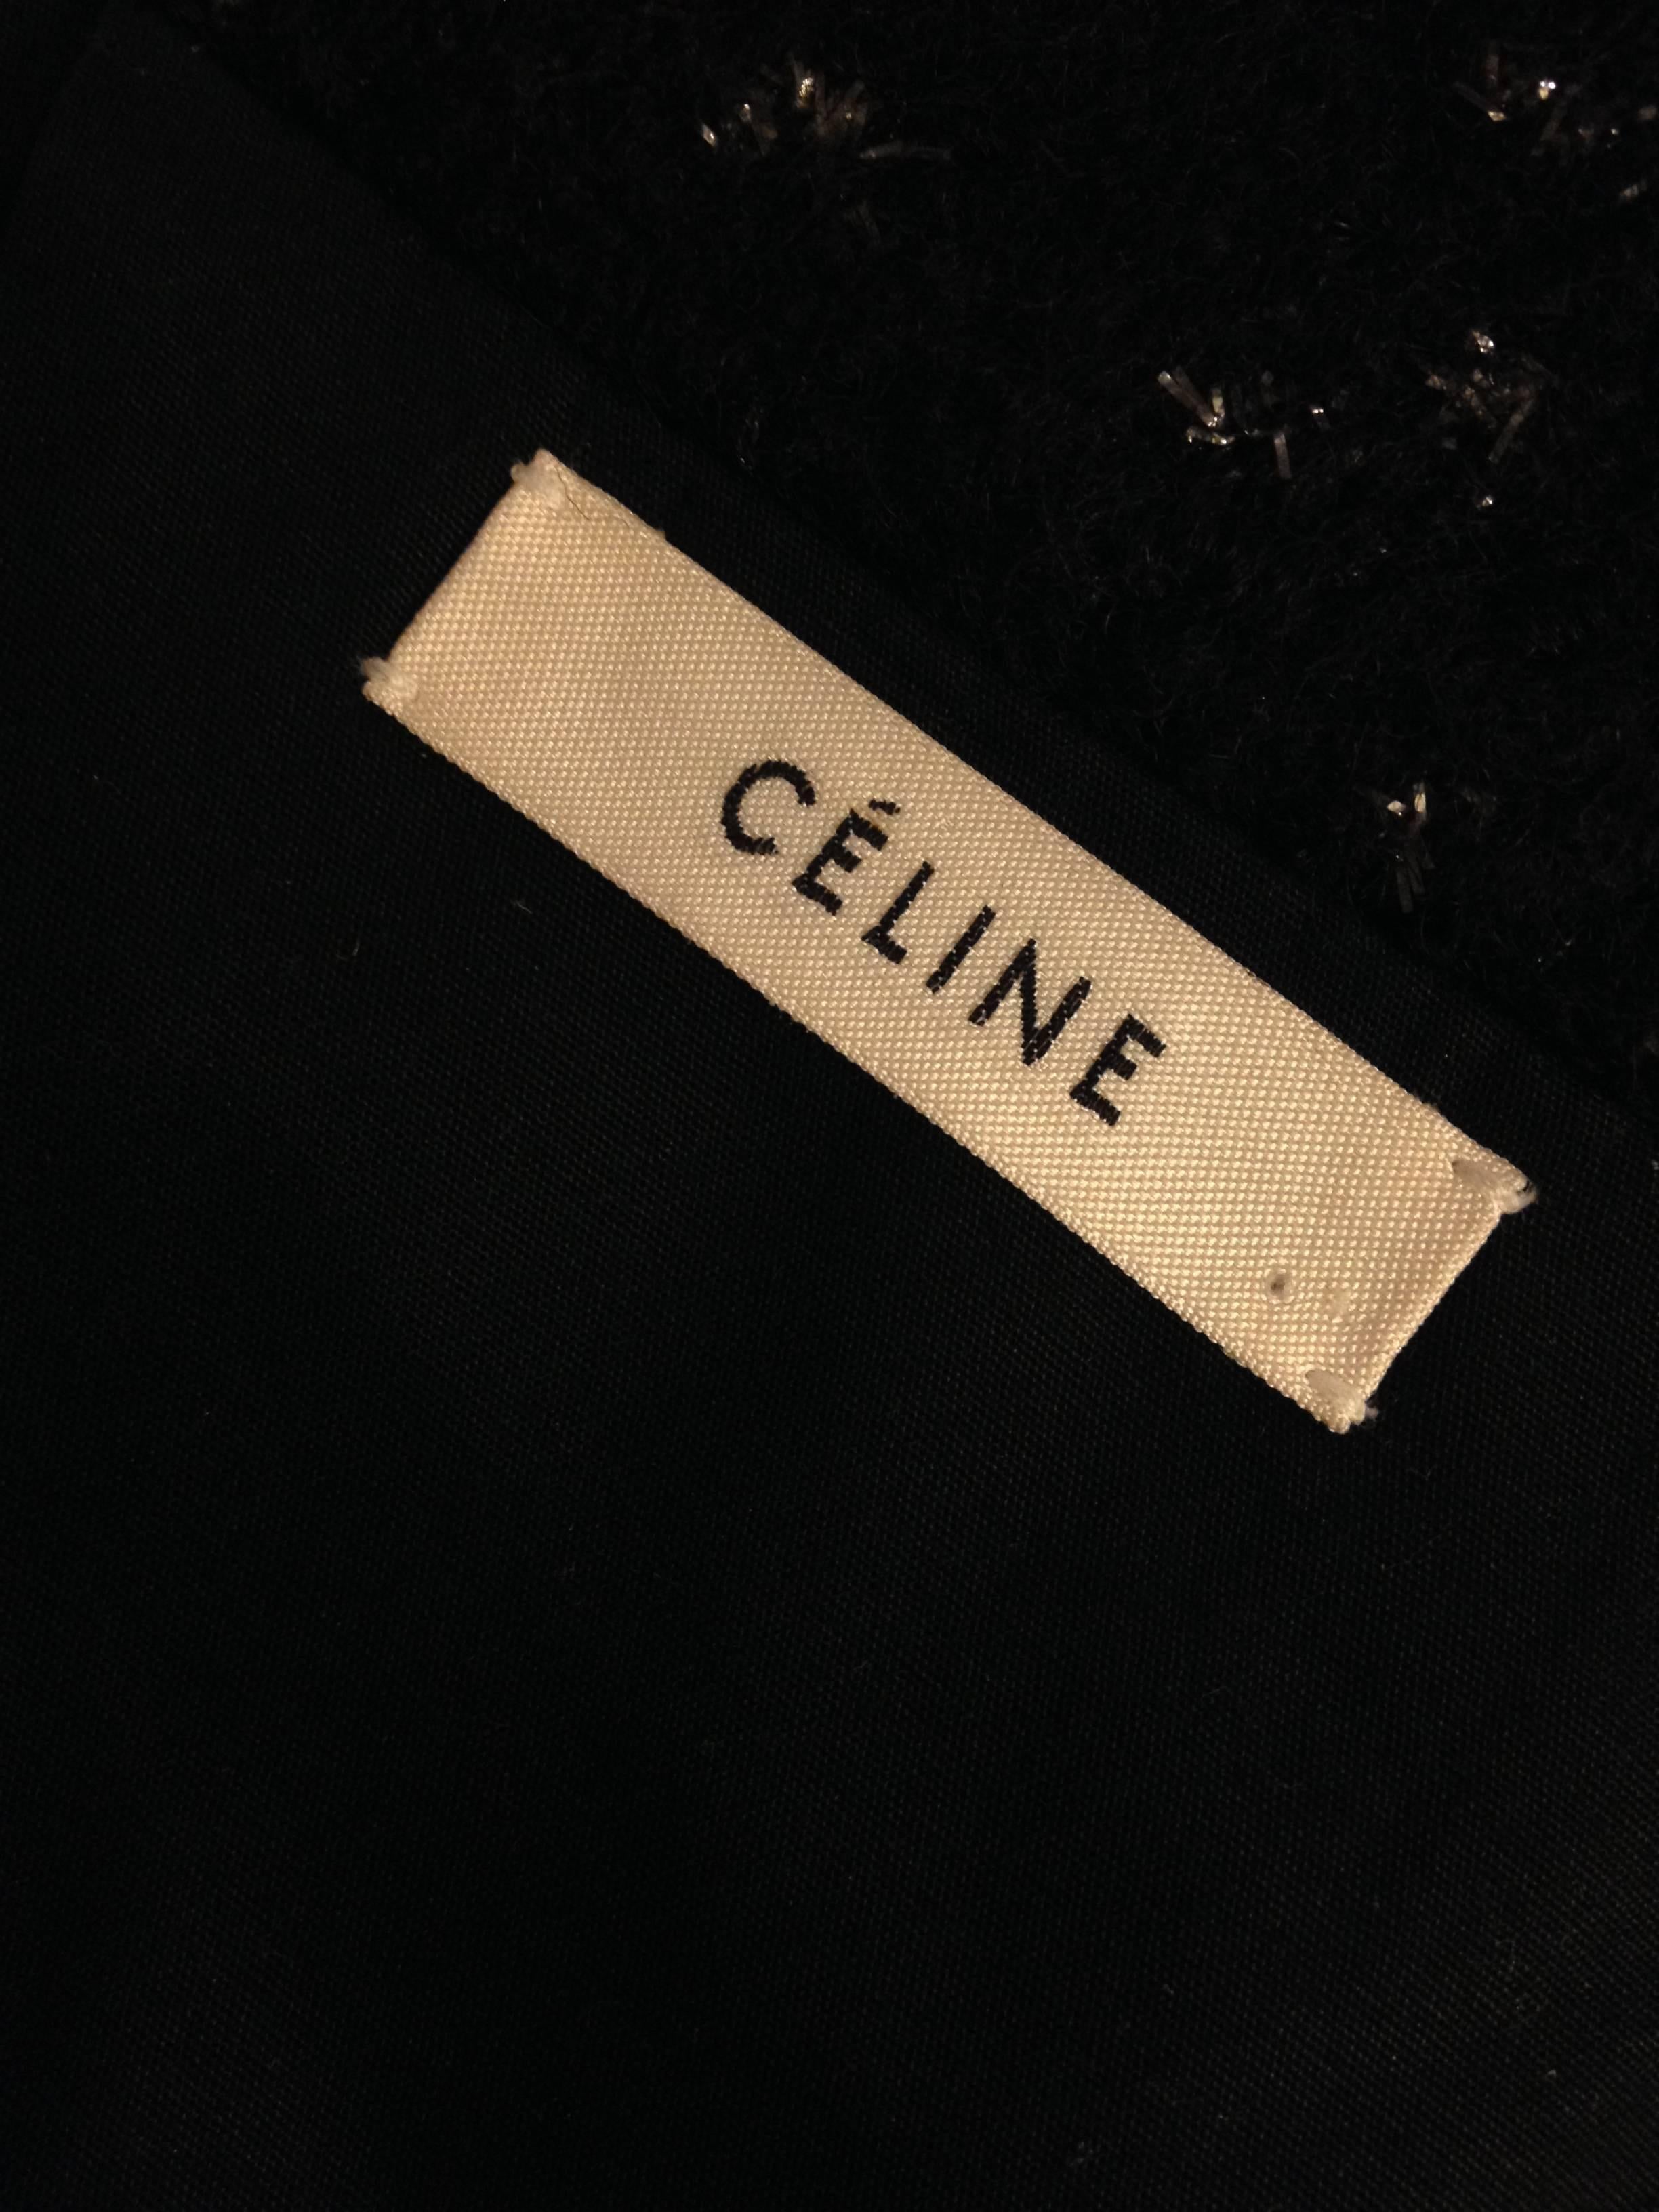 Celine Black Sparkly Wool Jacket Size 36 (4) For Sale 4